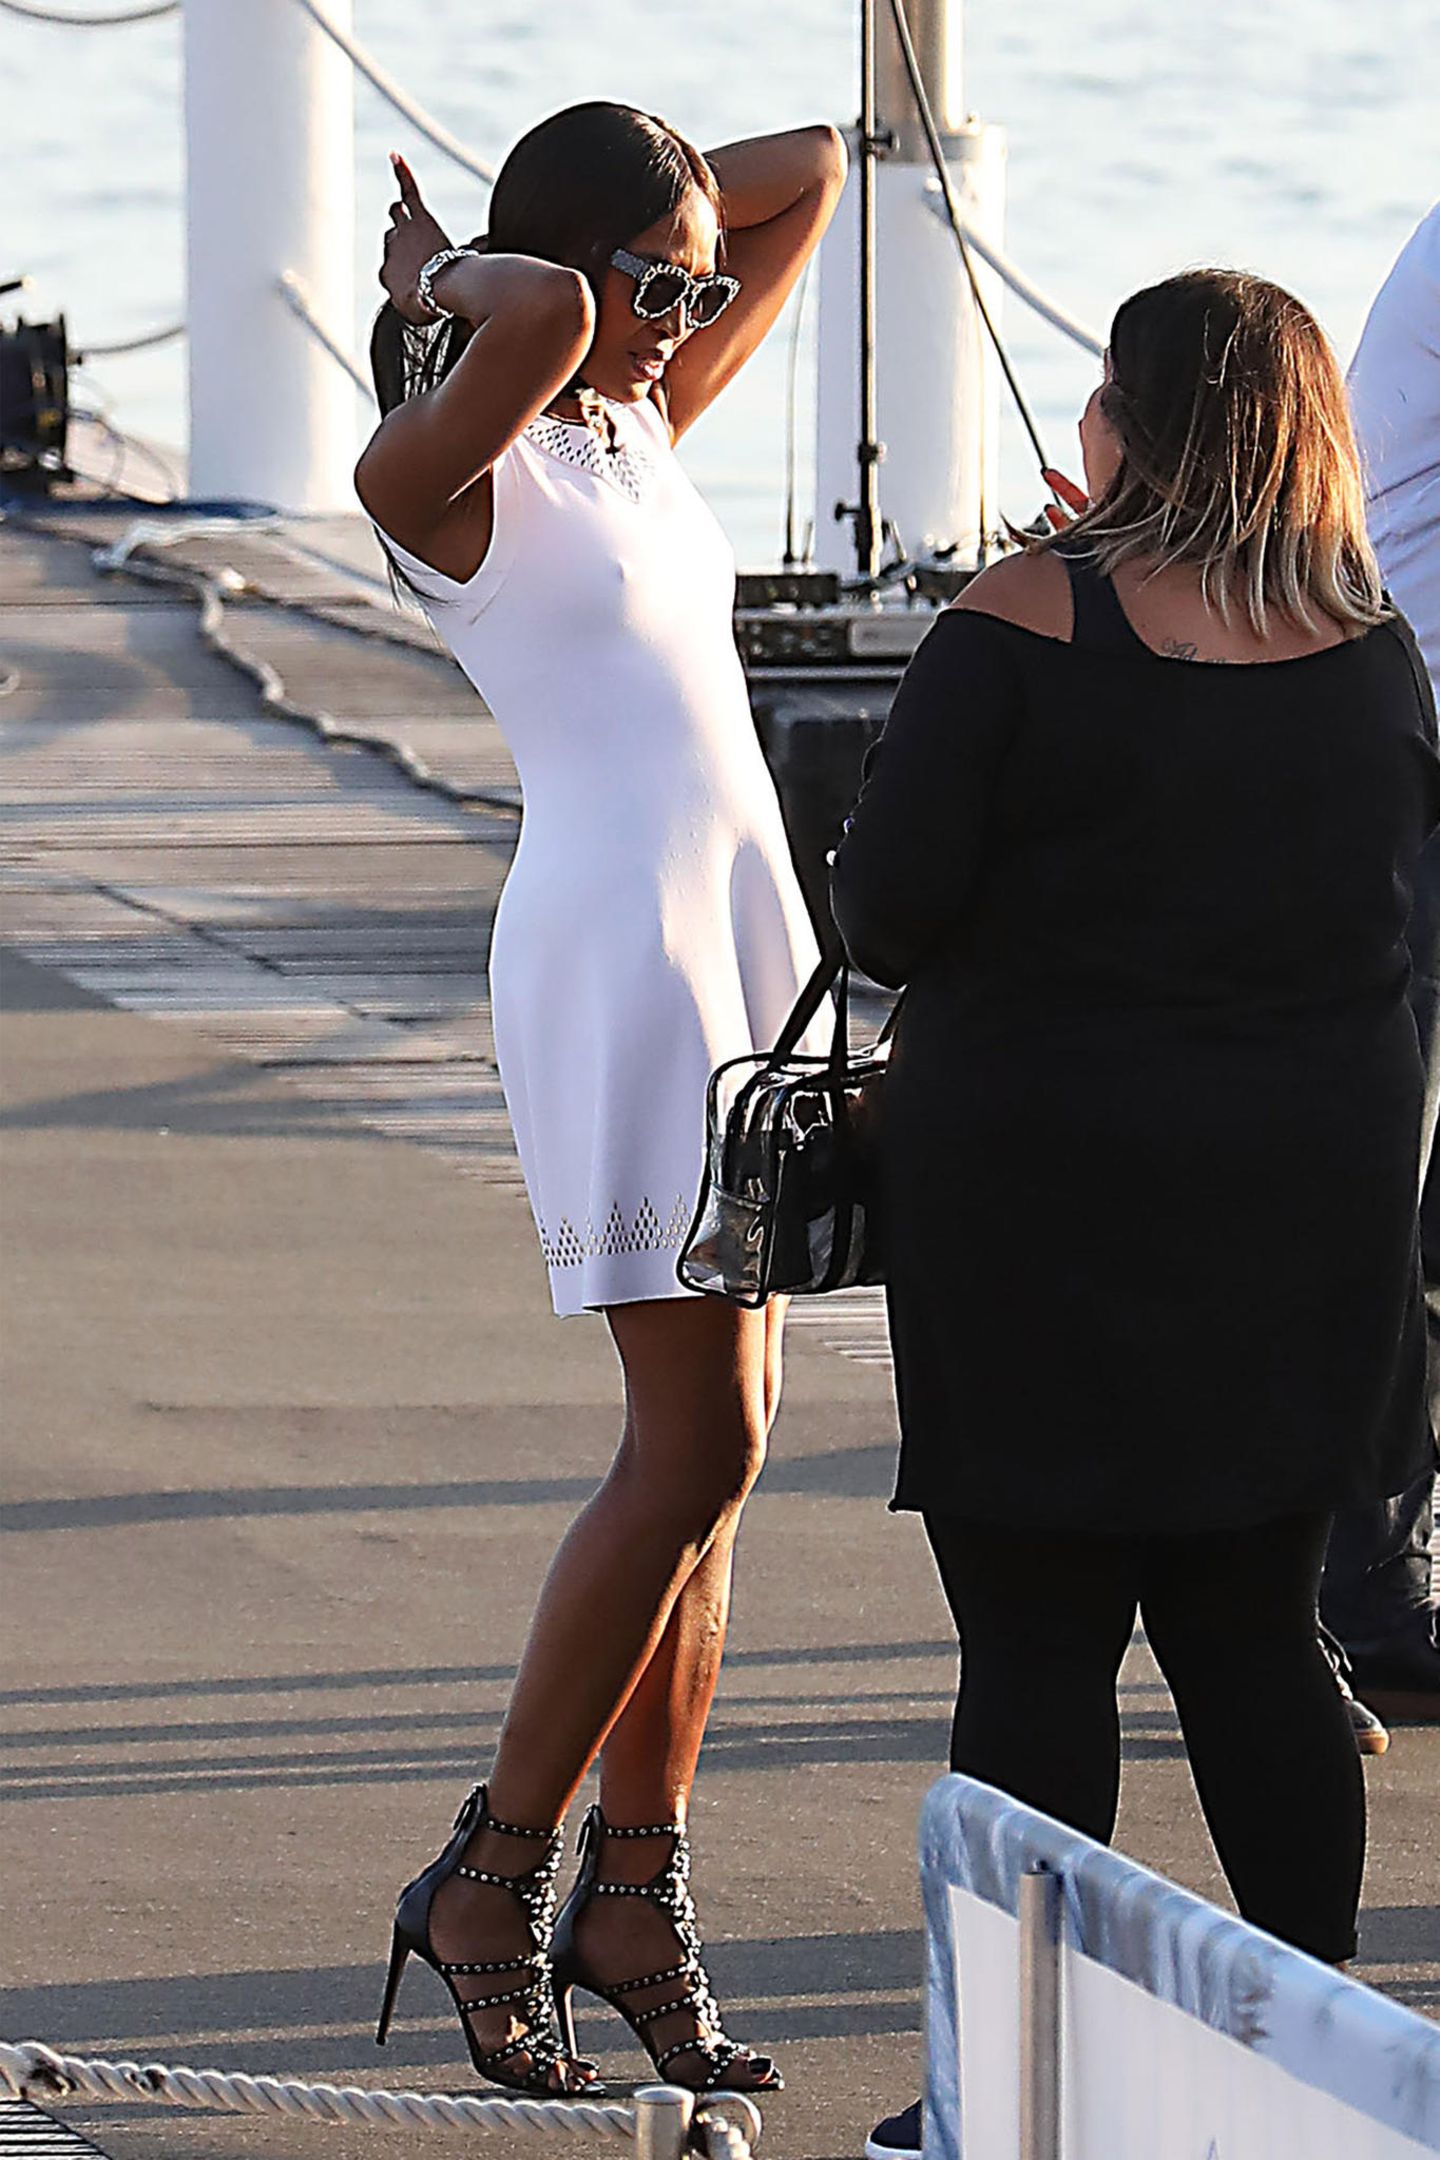 Und nicht nur Kendall genießt den sommerlichen Mai in Cannes ohne BH, auch Supermodel Naomi Campbell im weißen Dress verzichtet ganz offensichtlich darauf.